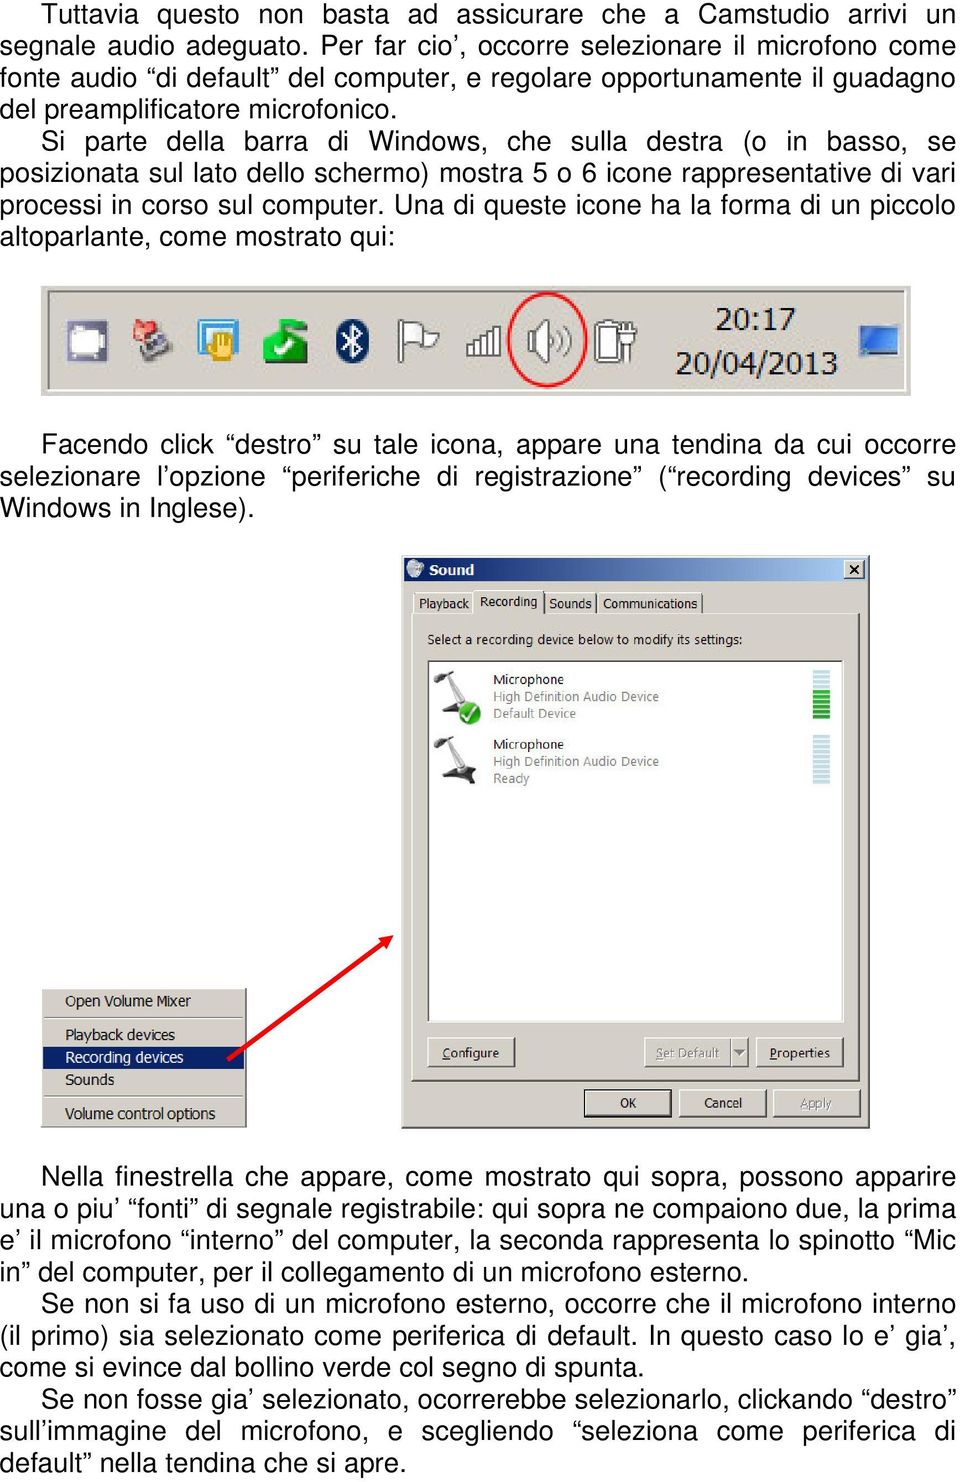 Si parte della barra di Windows, che sulla destra (o in basso, se posizionata sul lato dello schermo) mostra 5 o 6 icone rappresentative di vari processi in corso sul computer.